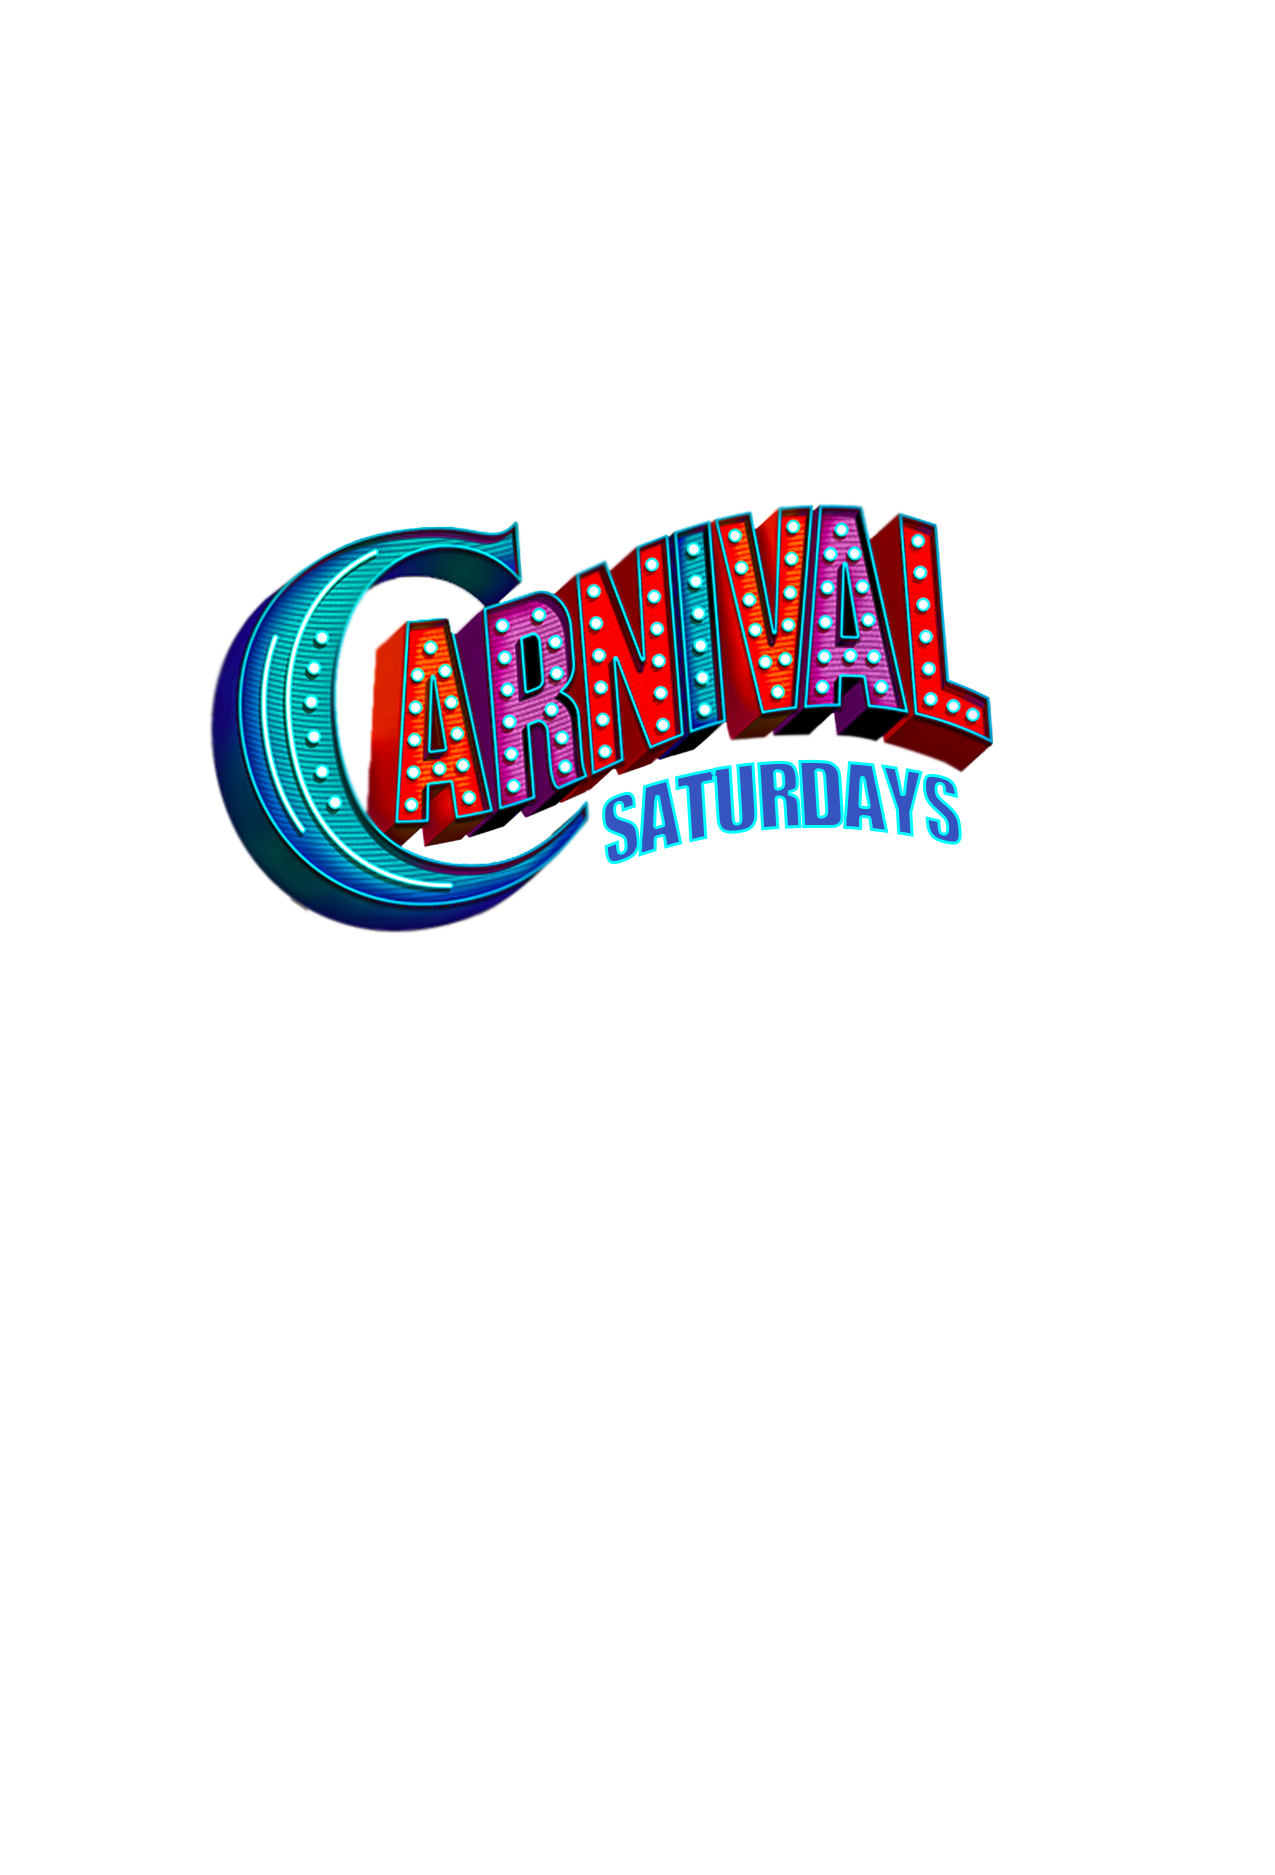 Carnival Saturdays @ Jouvay Nightclub 